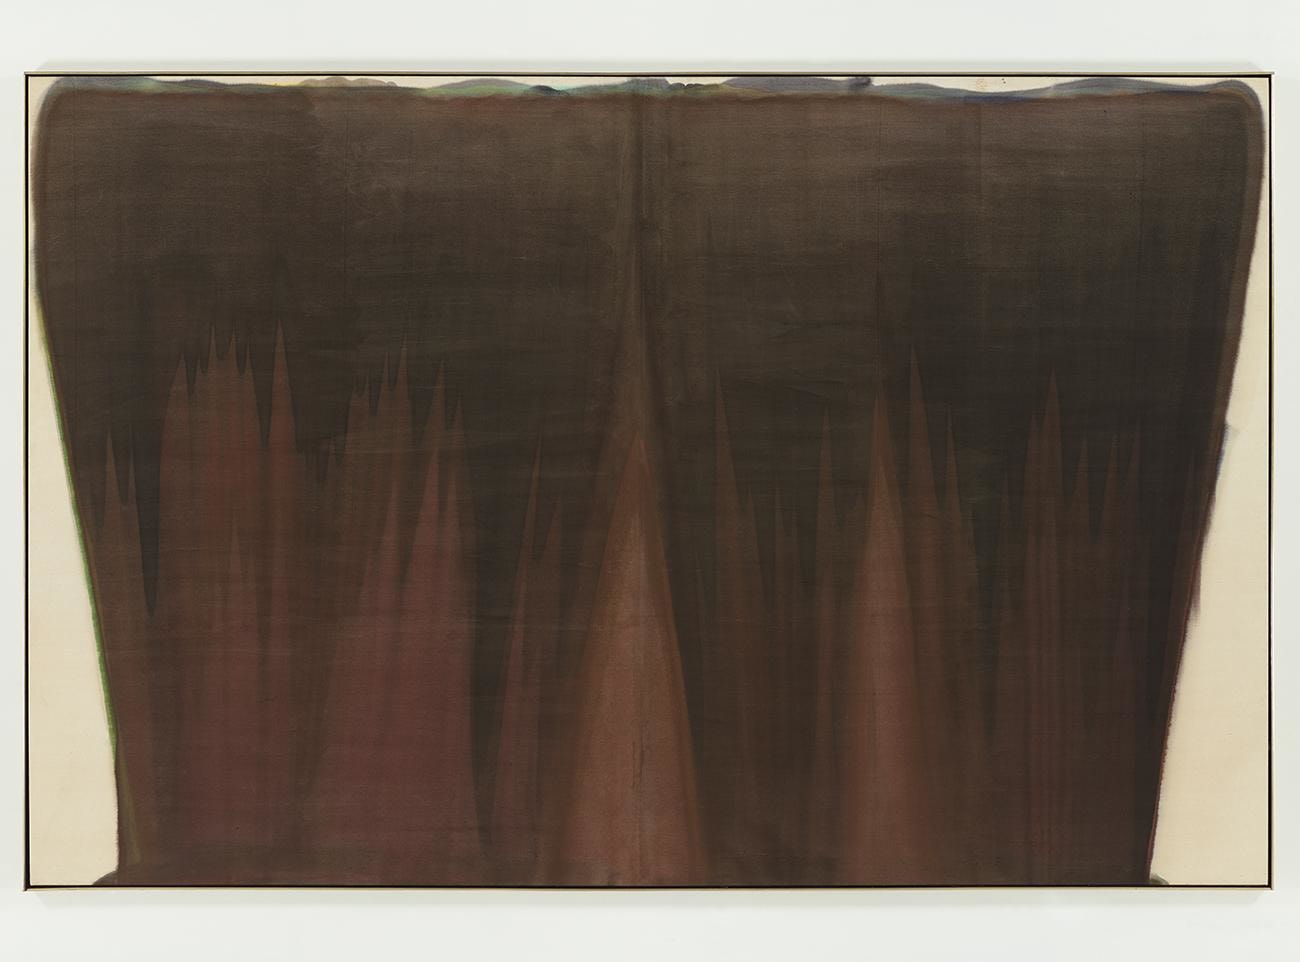 Curtain,&amp;nbsp;1958
acrylic resin (Magna) on canvas
91 1/2 x 140 1/4 inches (232.4 x 356.2 cm)